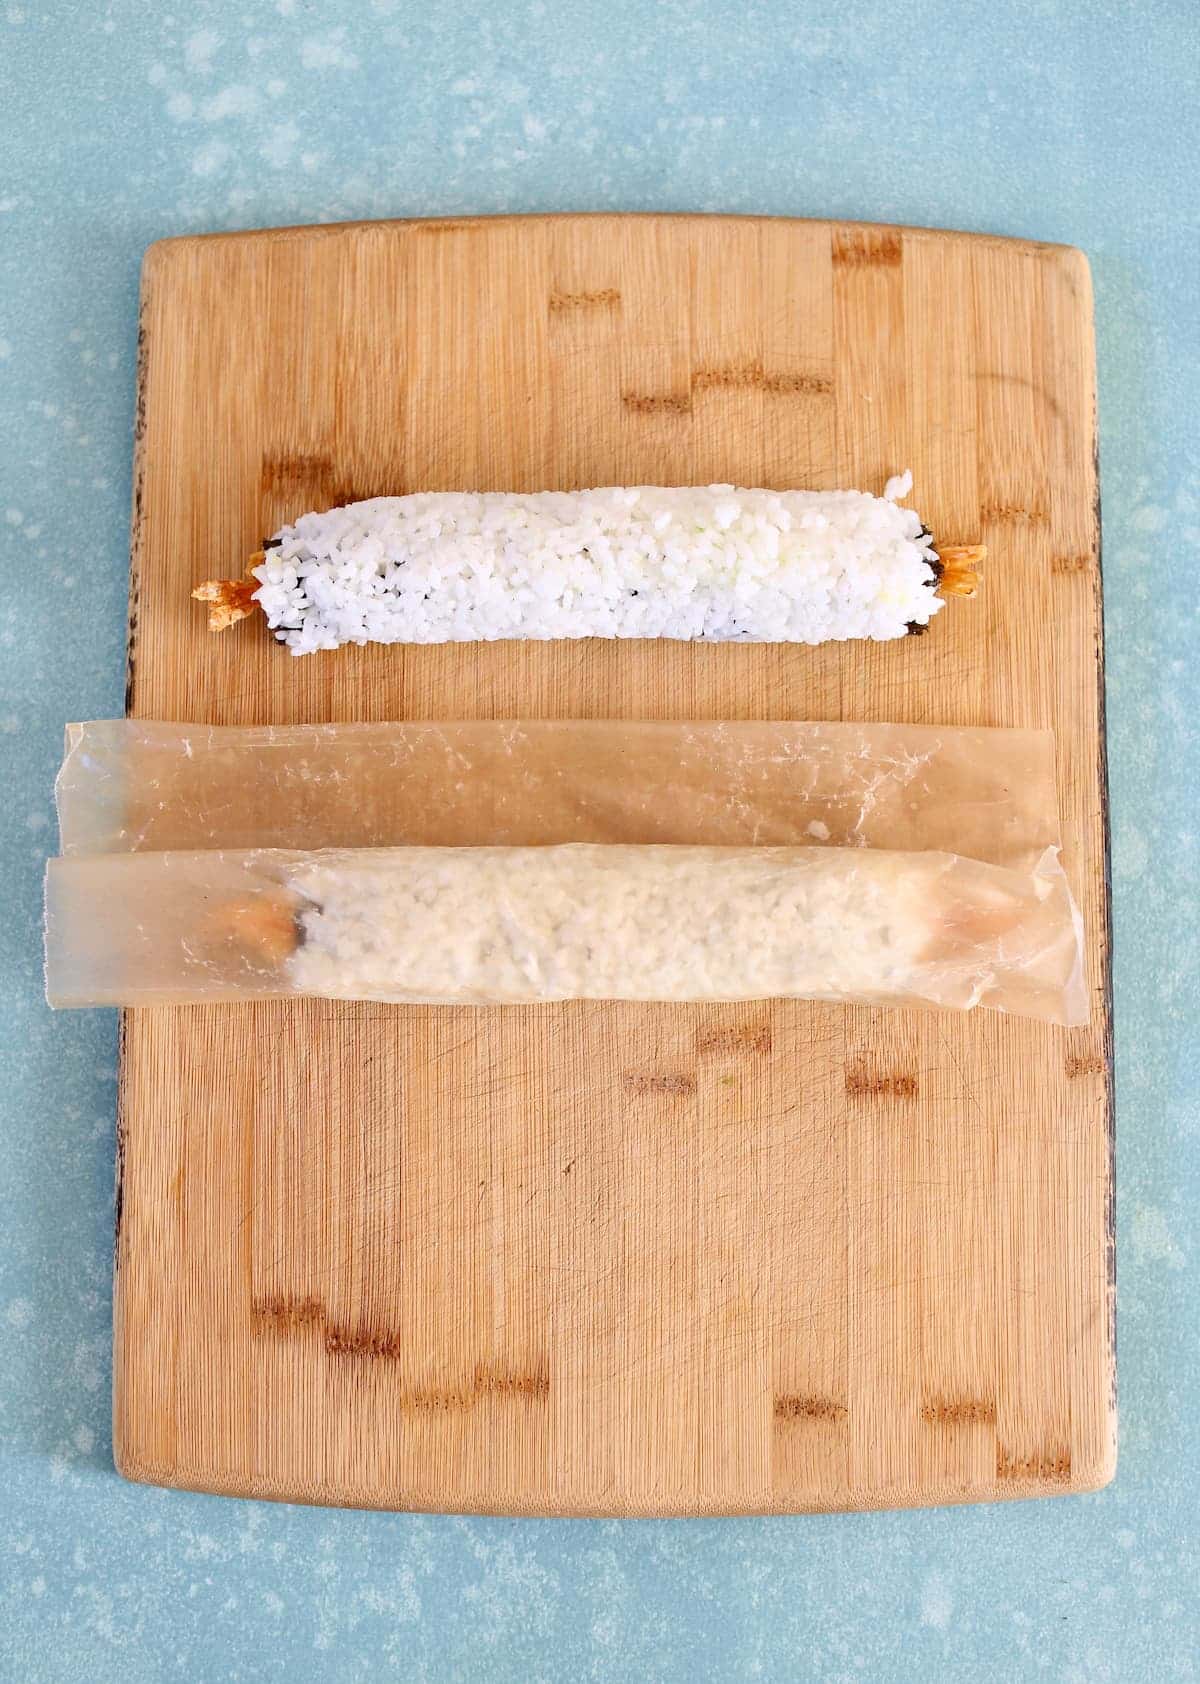 two sushi rolls on a cutting board.